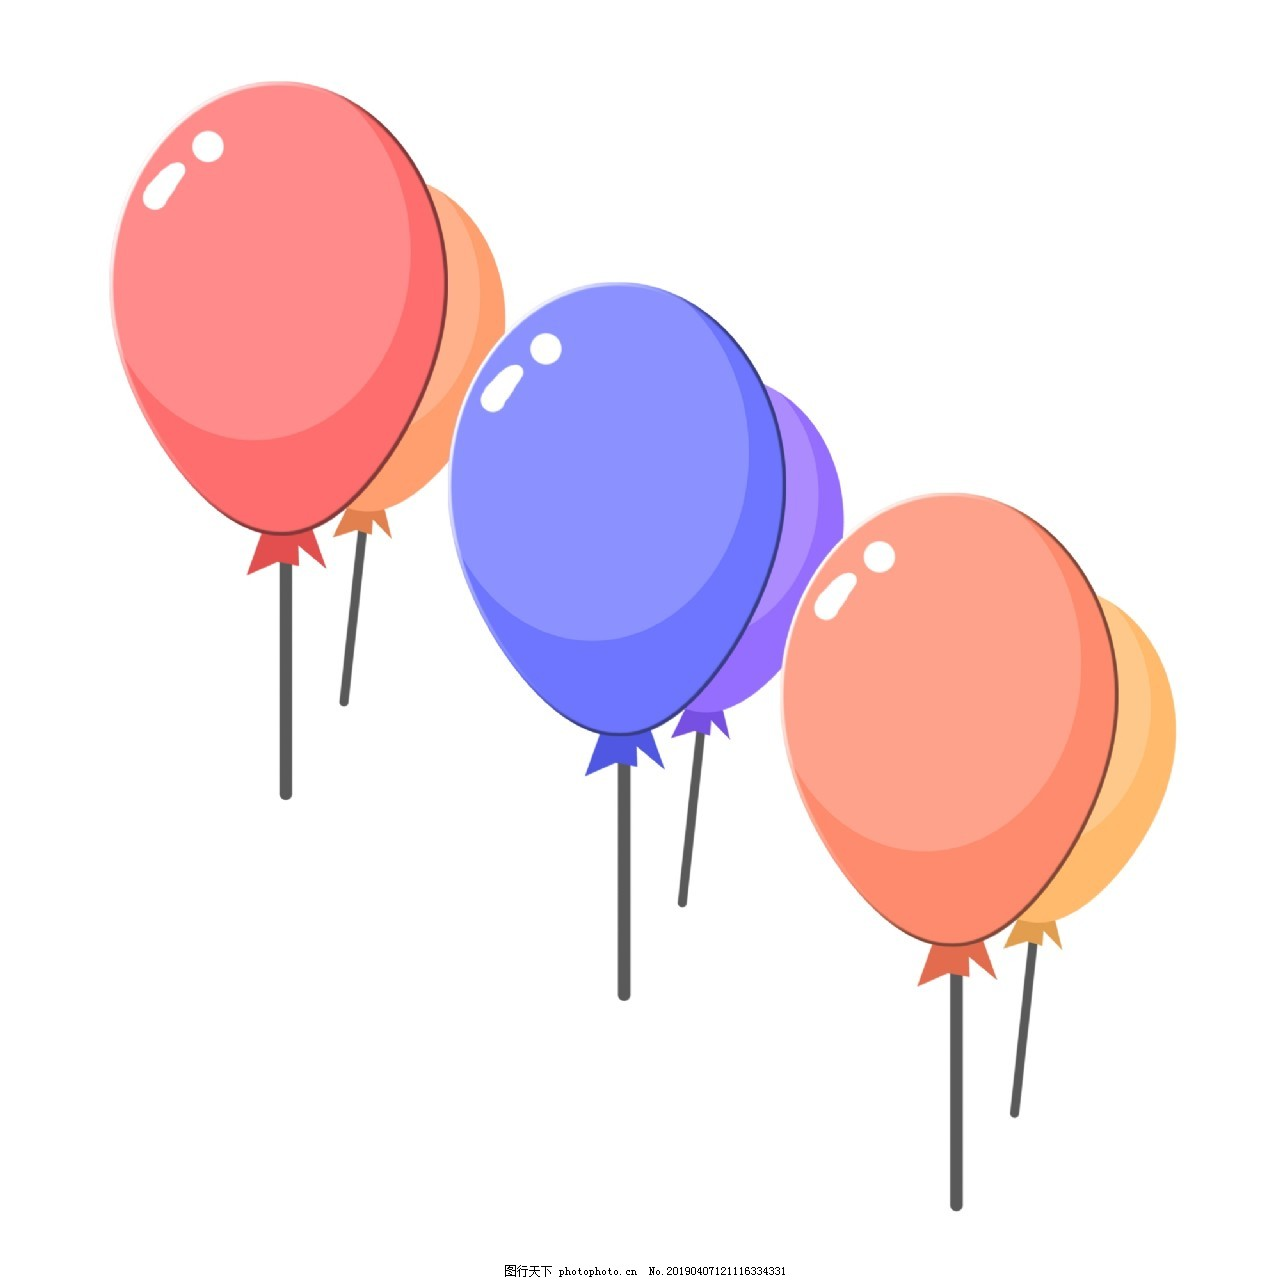 ‘~气球PPT卡通插画图片_PPT元素_平面创作元素-  ~’ 的图片